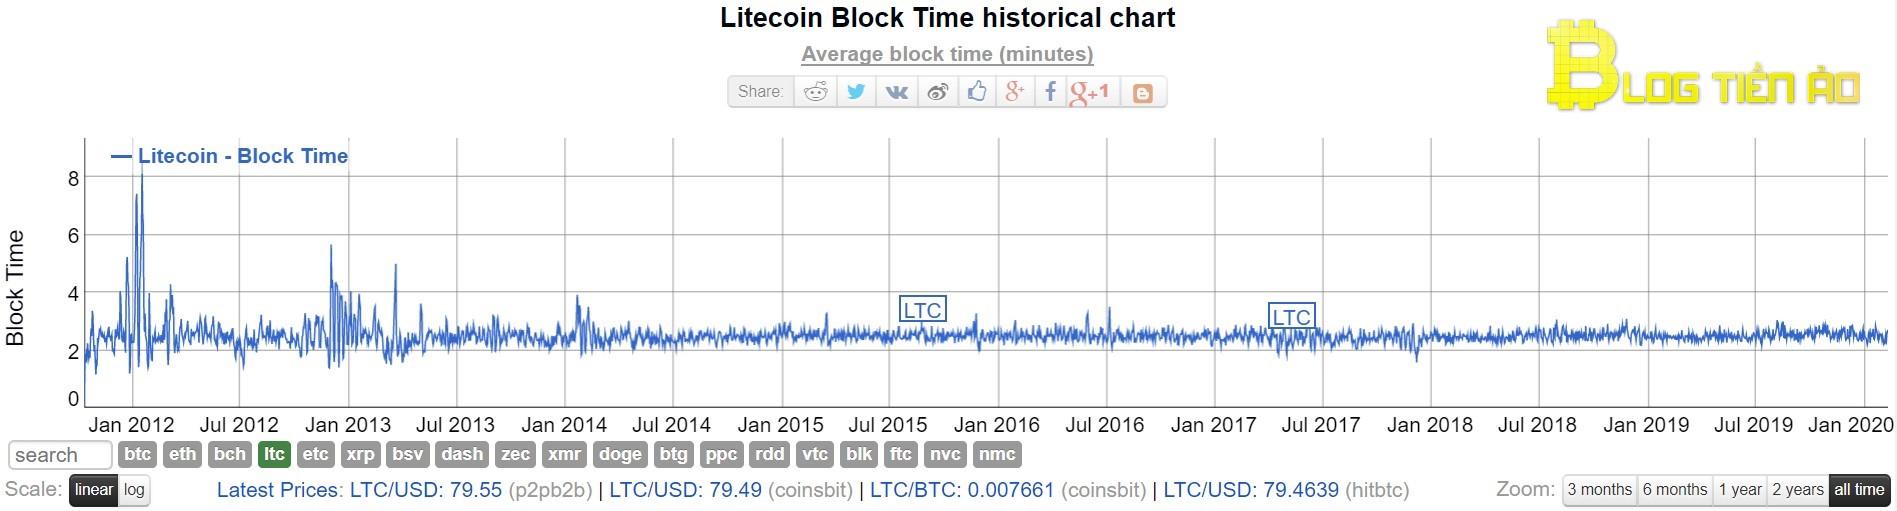 Čas vytvoření bloku Litecoinu